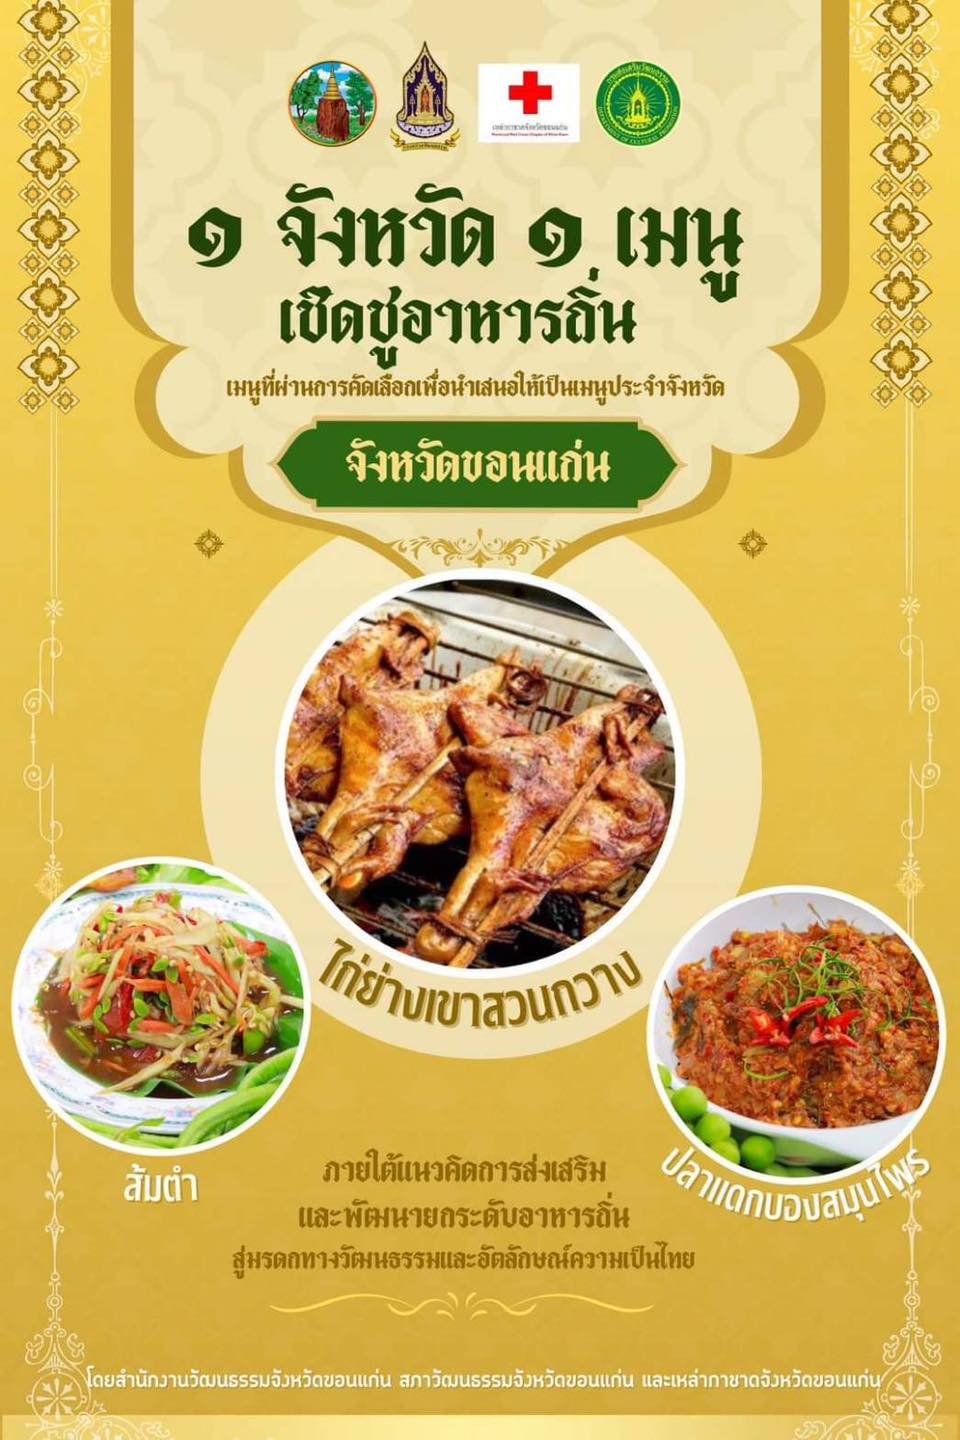 เตรียมชู 77 เมนูอาหารไทย ยกระดับสู่ Soft power